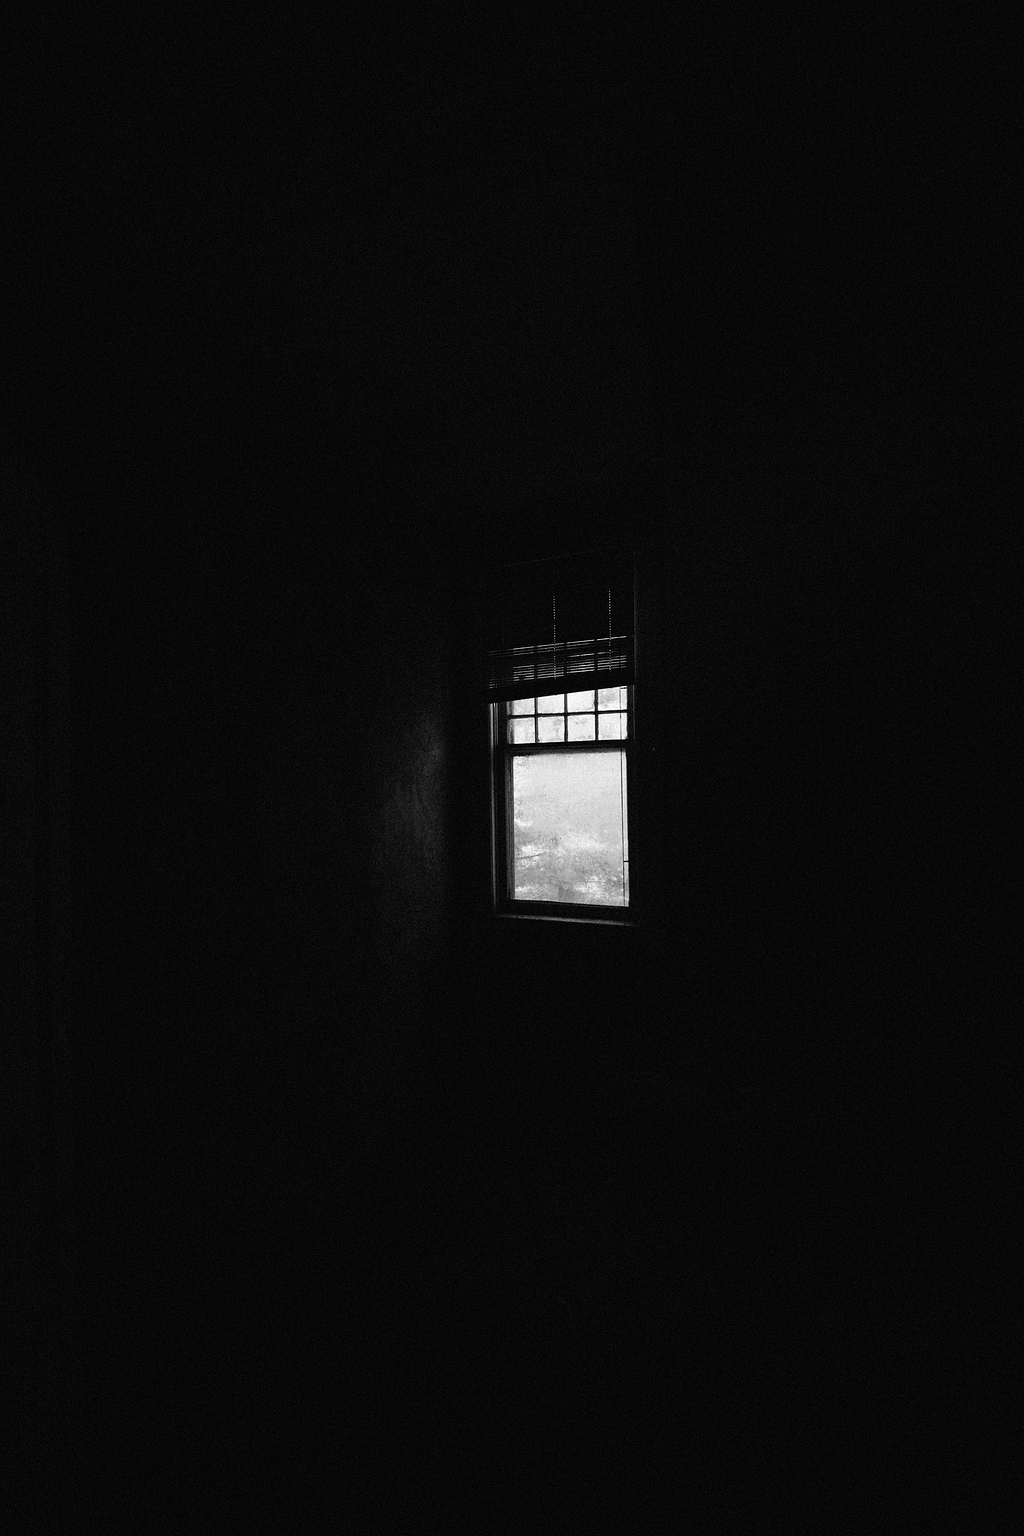 窗户,建筑物,黑暗,黑色,视野,房间,冬天,单色,黑白色,黑色和白色,灯光